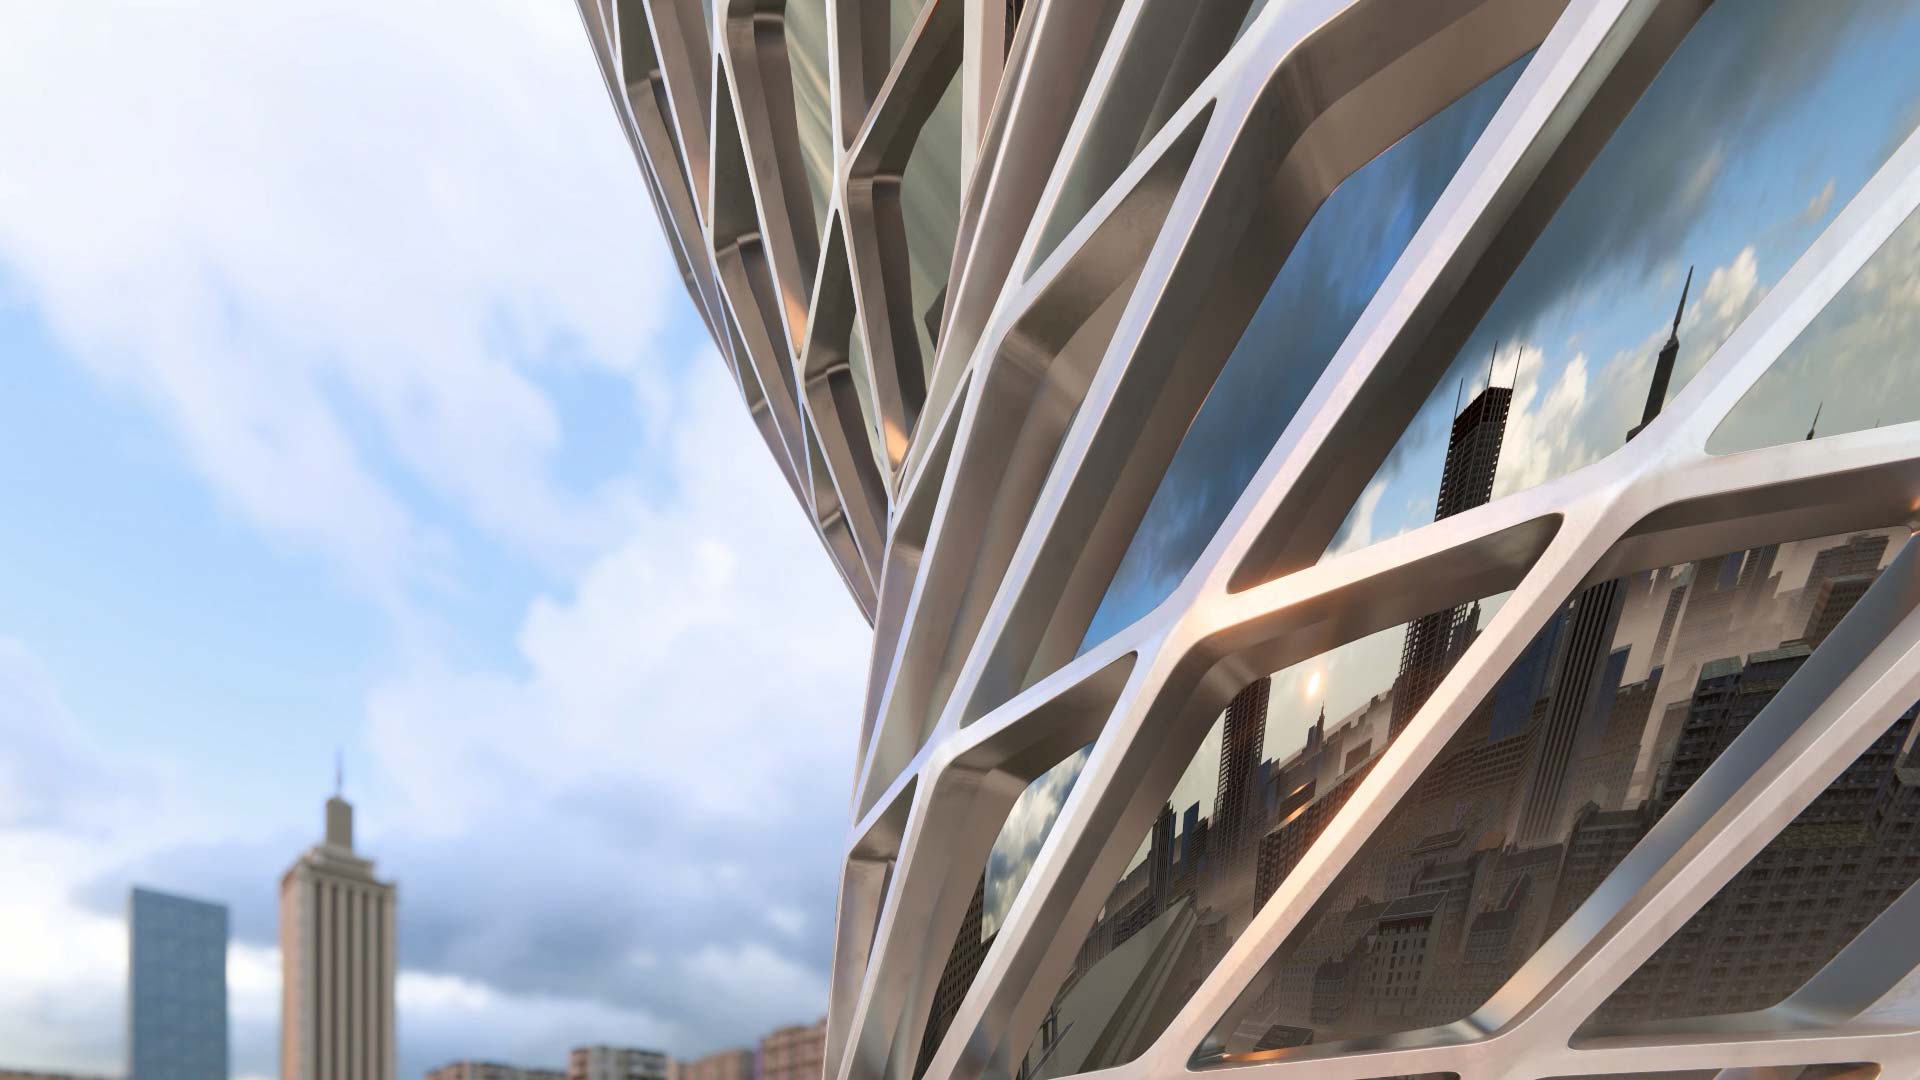 Architekturvisualisierung einer gekrümmten Hochhausfassade mit Spiegelung - Lumion